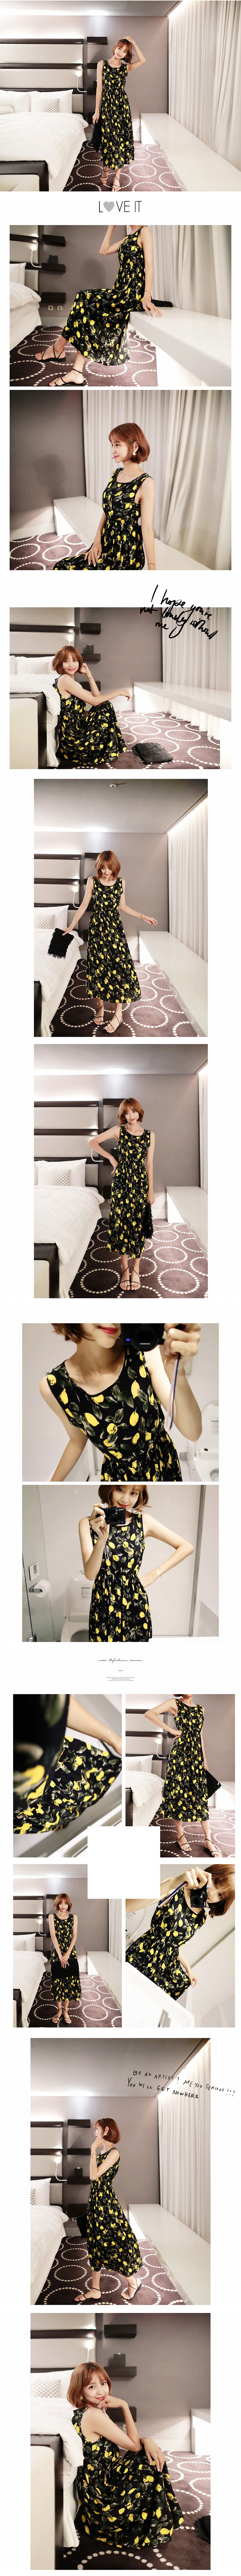 韩国MAGZERO [限量销售] 柠檬纹海边度假沙滩裙 均码One Size(S-M)